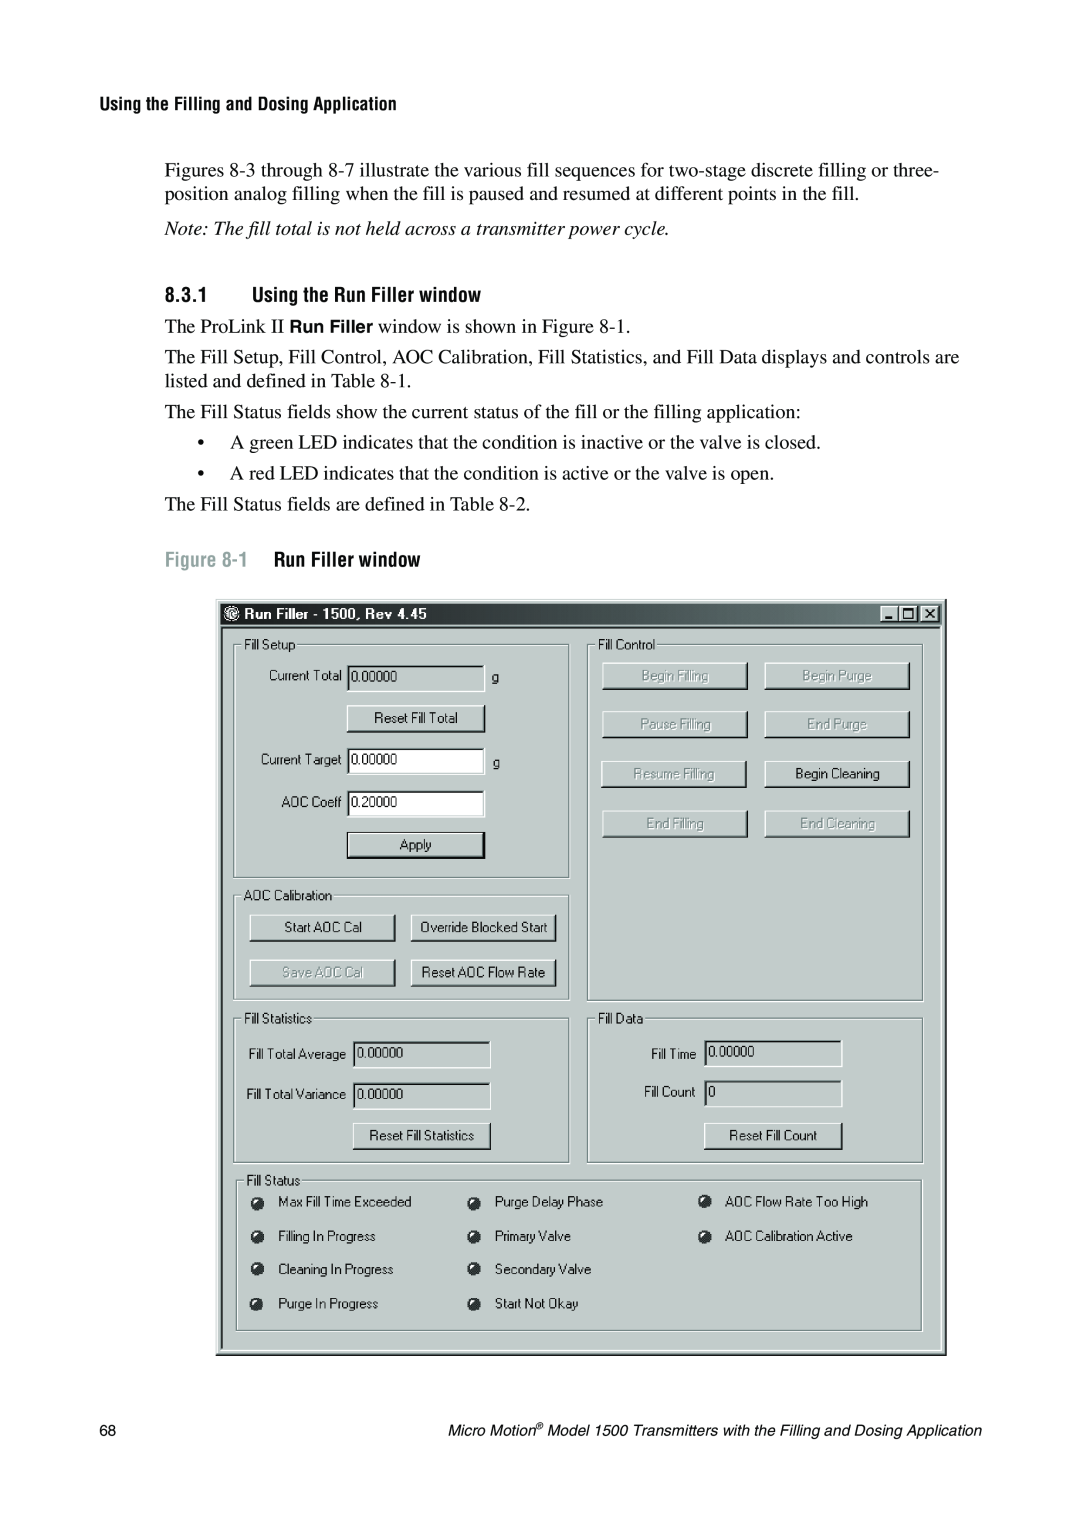 Emerson Process Management 1500 manual 8.3.1Using the Run Filler window, 1 Run Filler window 